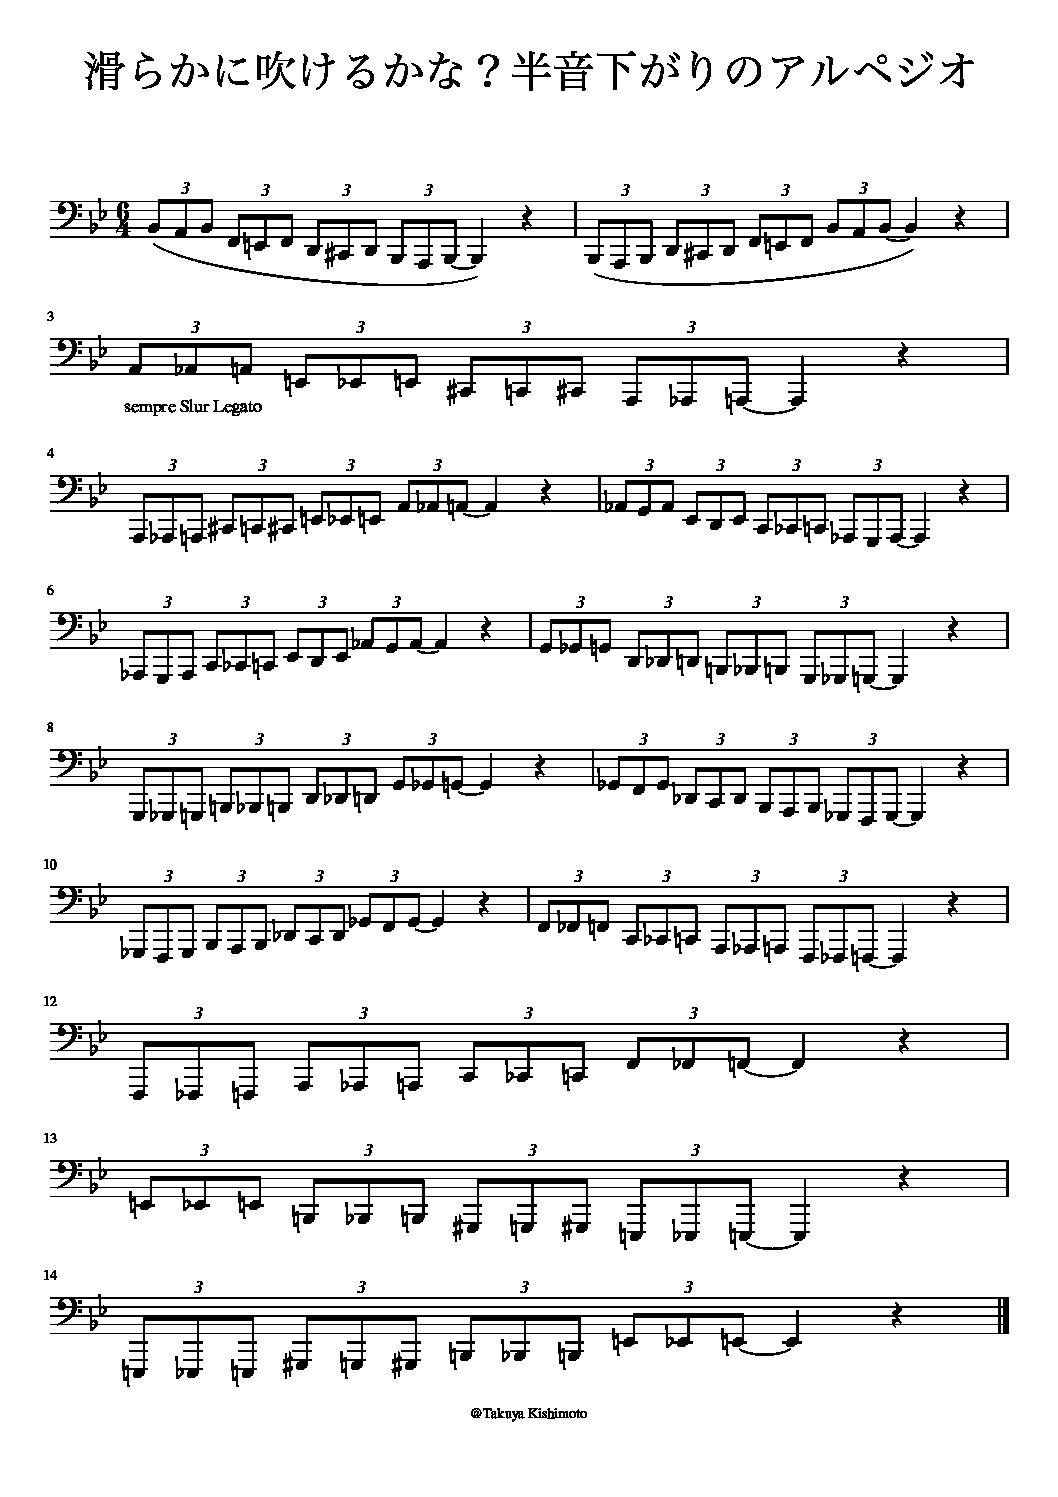 アルペジオ練習の楽譜を無料ダウンロードして一緒にやってみよう!! | Takuyablog